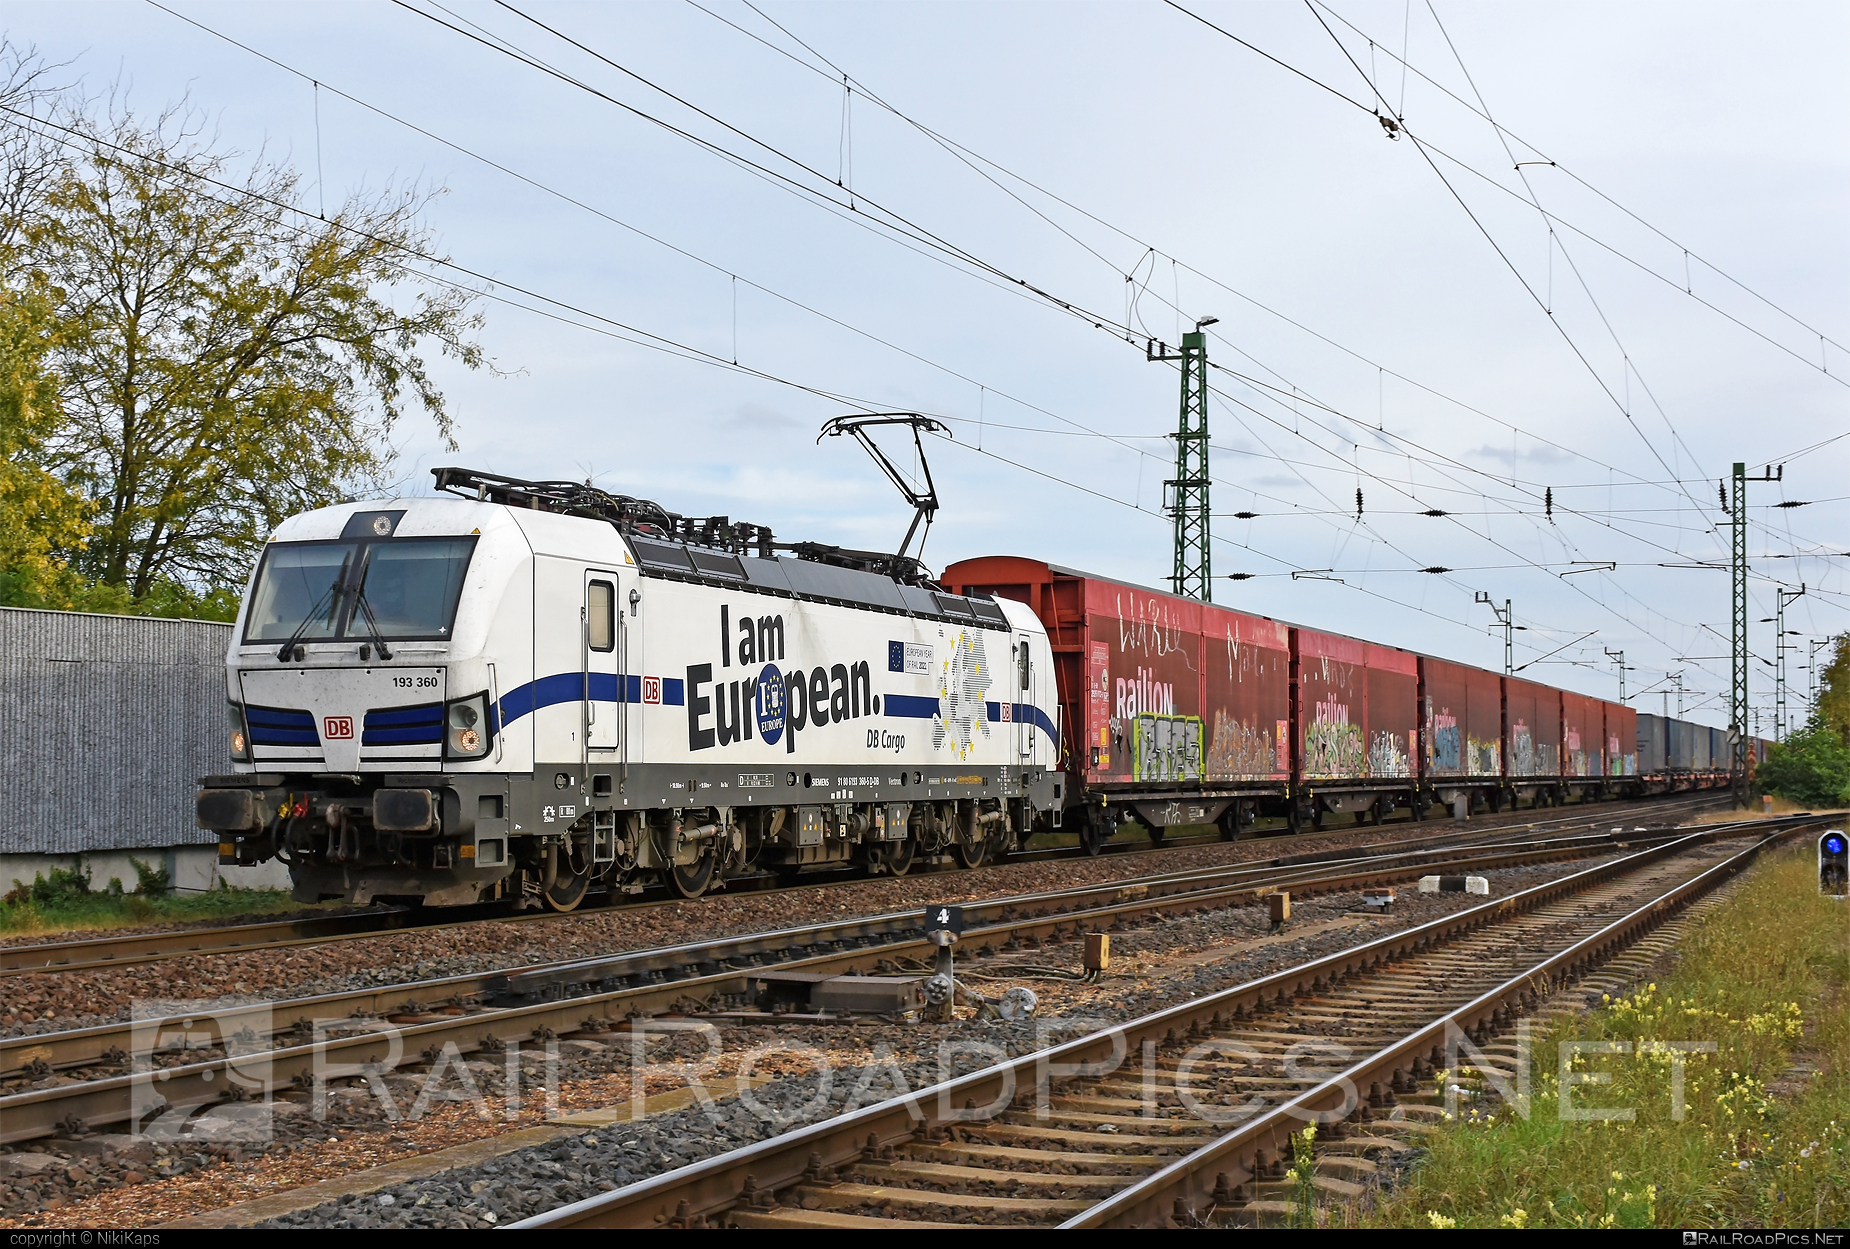 Siemens Vectron MS - 193 360 operated by DB Cargo AG #db #dbcargo #dbcargoag #deutschebahn #graffiti #railion #siemens #siemensVectron #siemensVectronMS #vectron #vectronMS